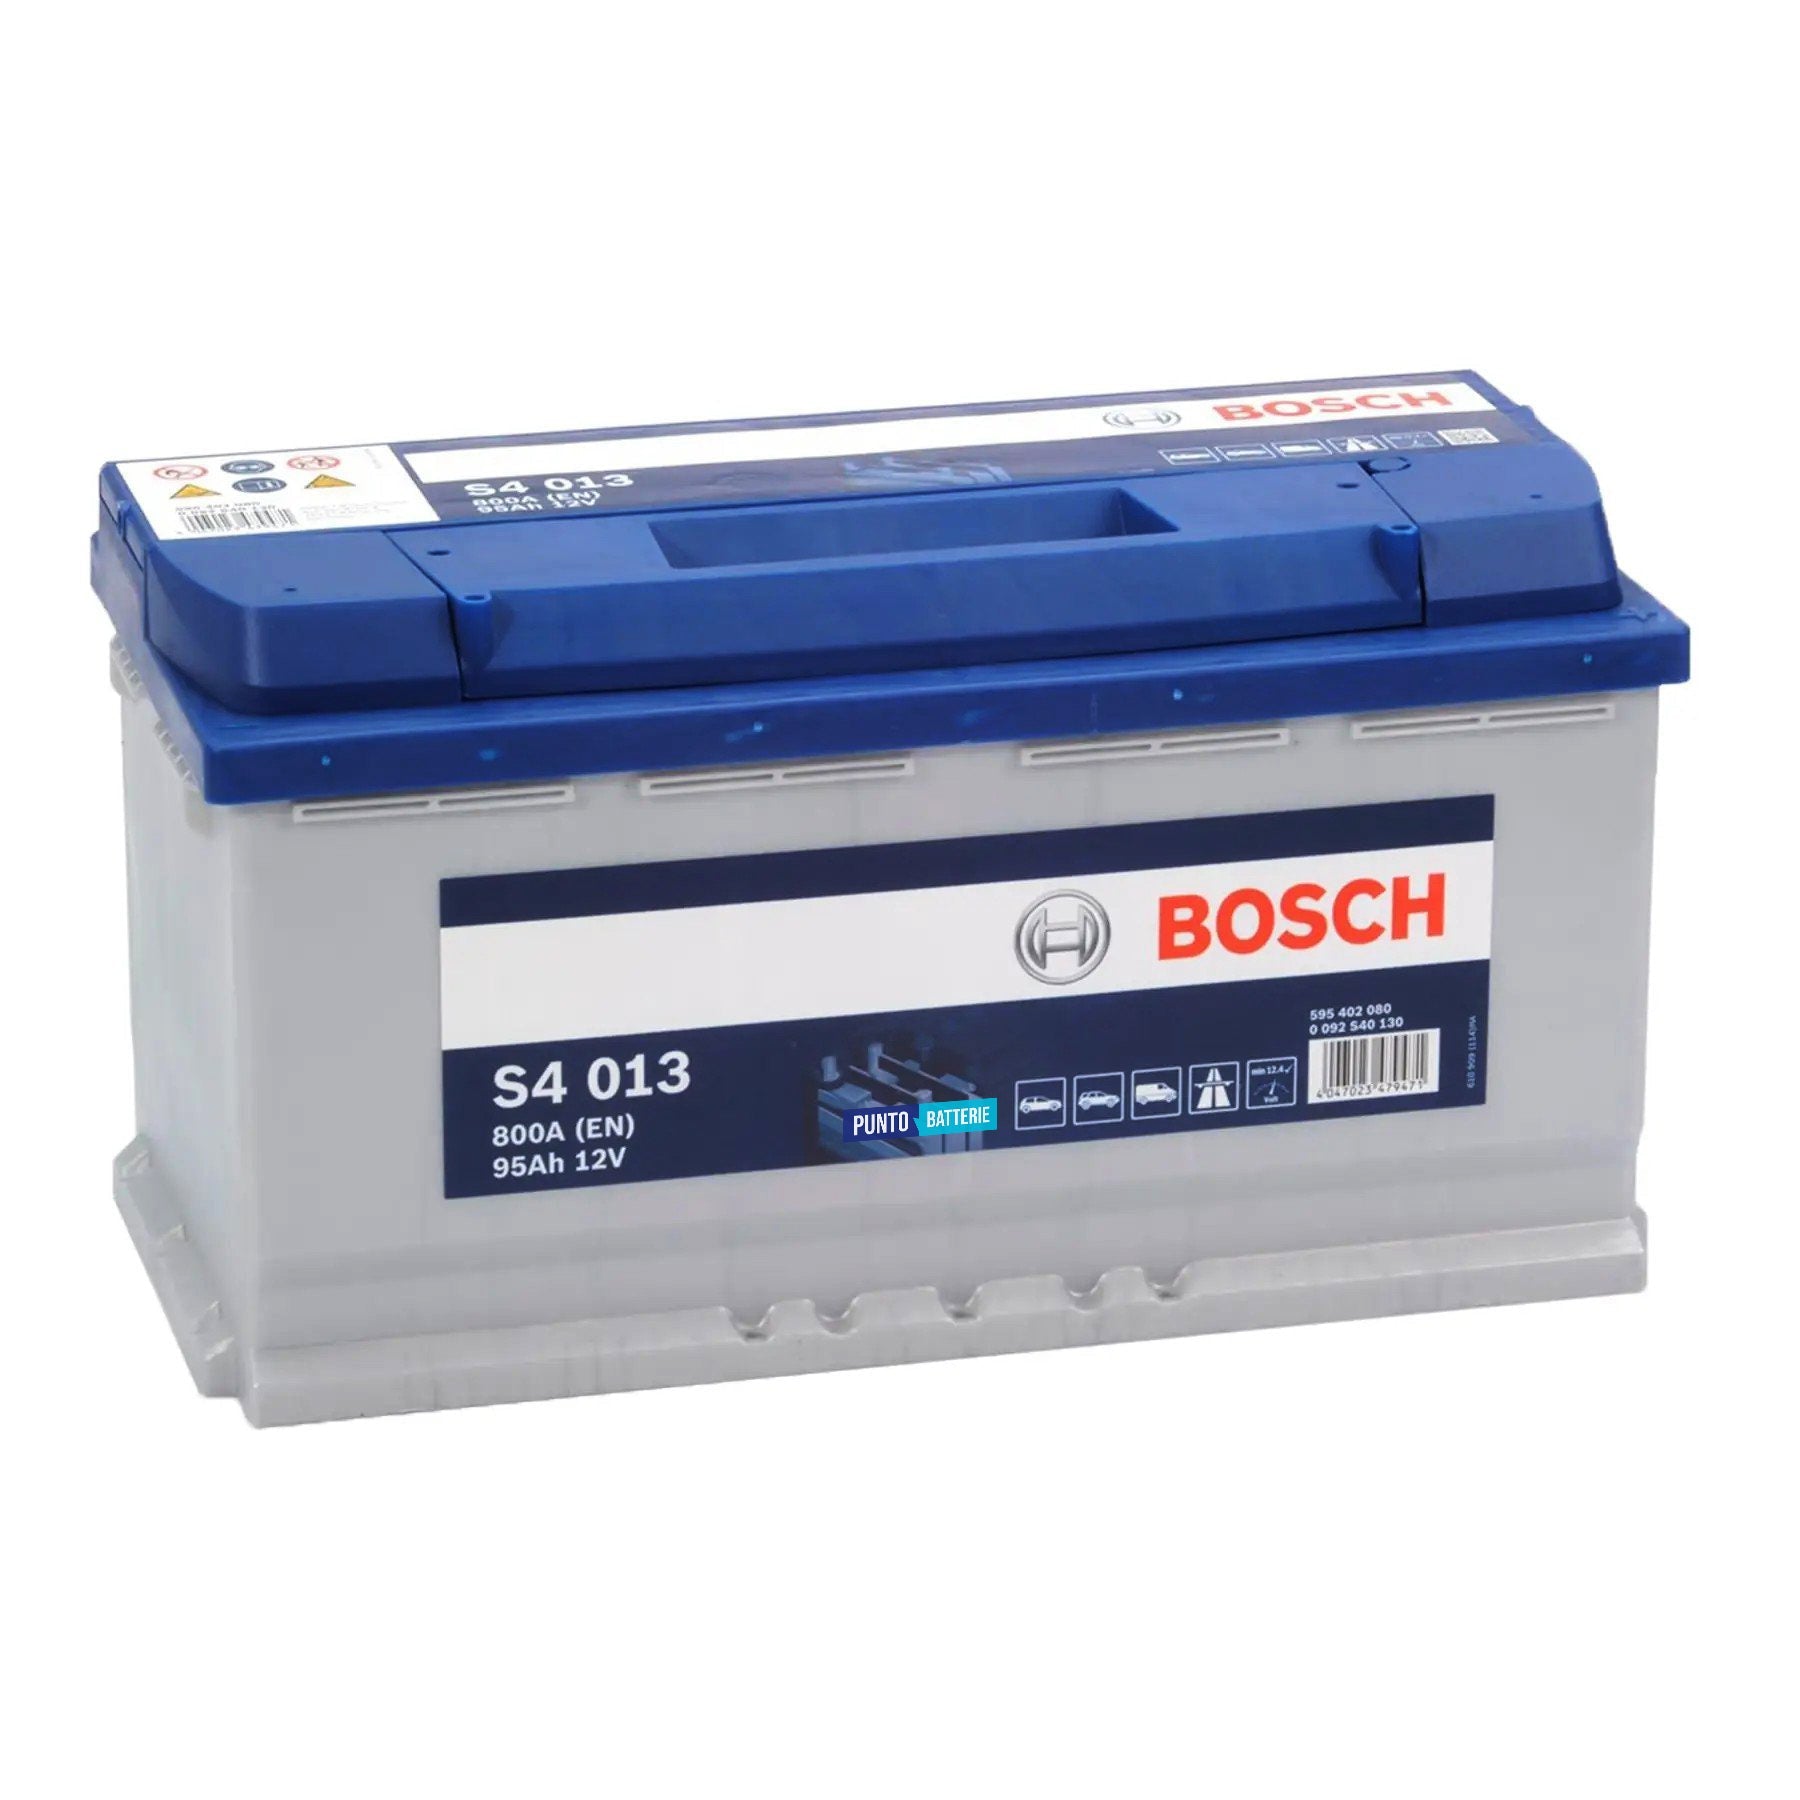 Batteria originale Bosch S4 S4 013, dimensioni 353 x 175 x 190, polo positivo a destra, 12 volt, 95 amperora, 800 ampere. Batteria per auto e veicoli leggeri.